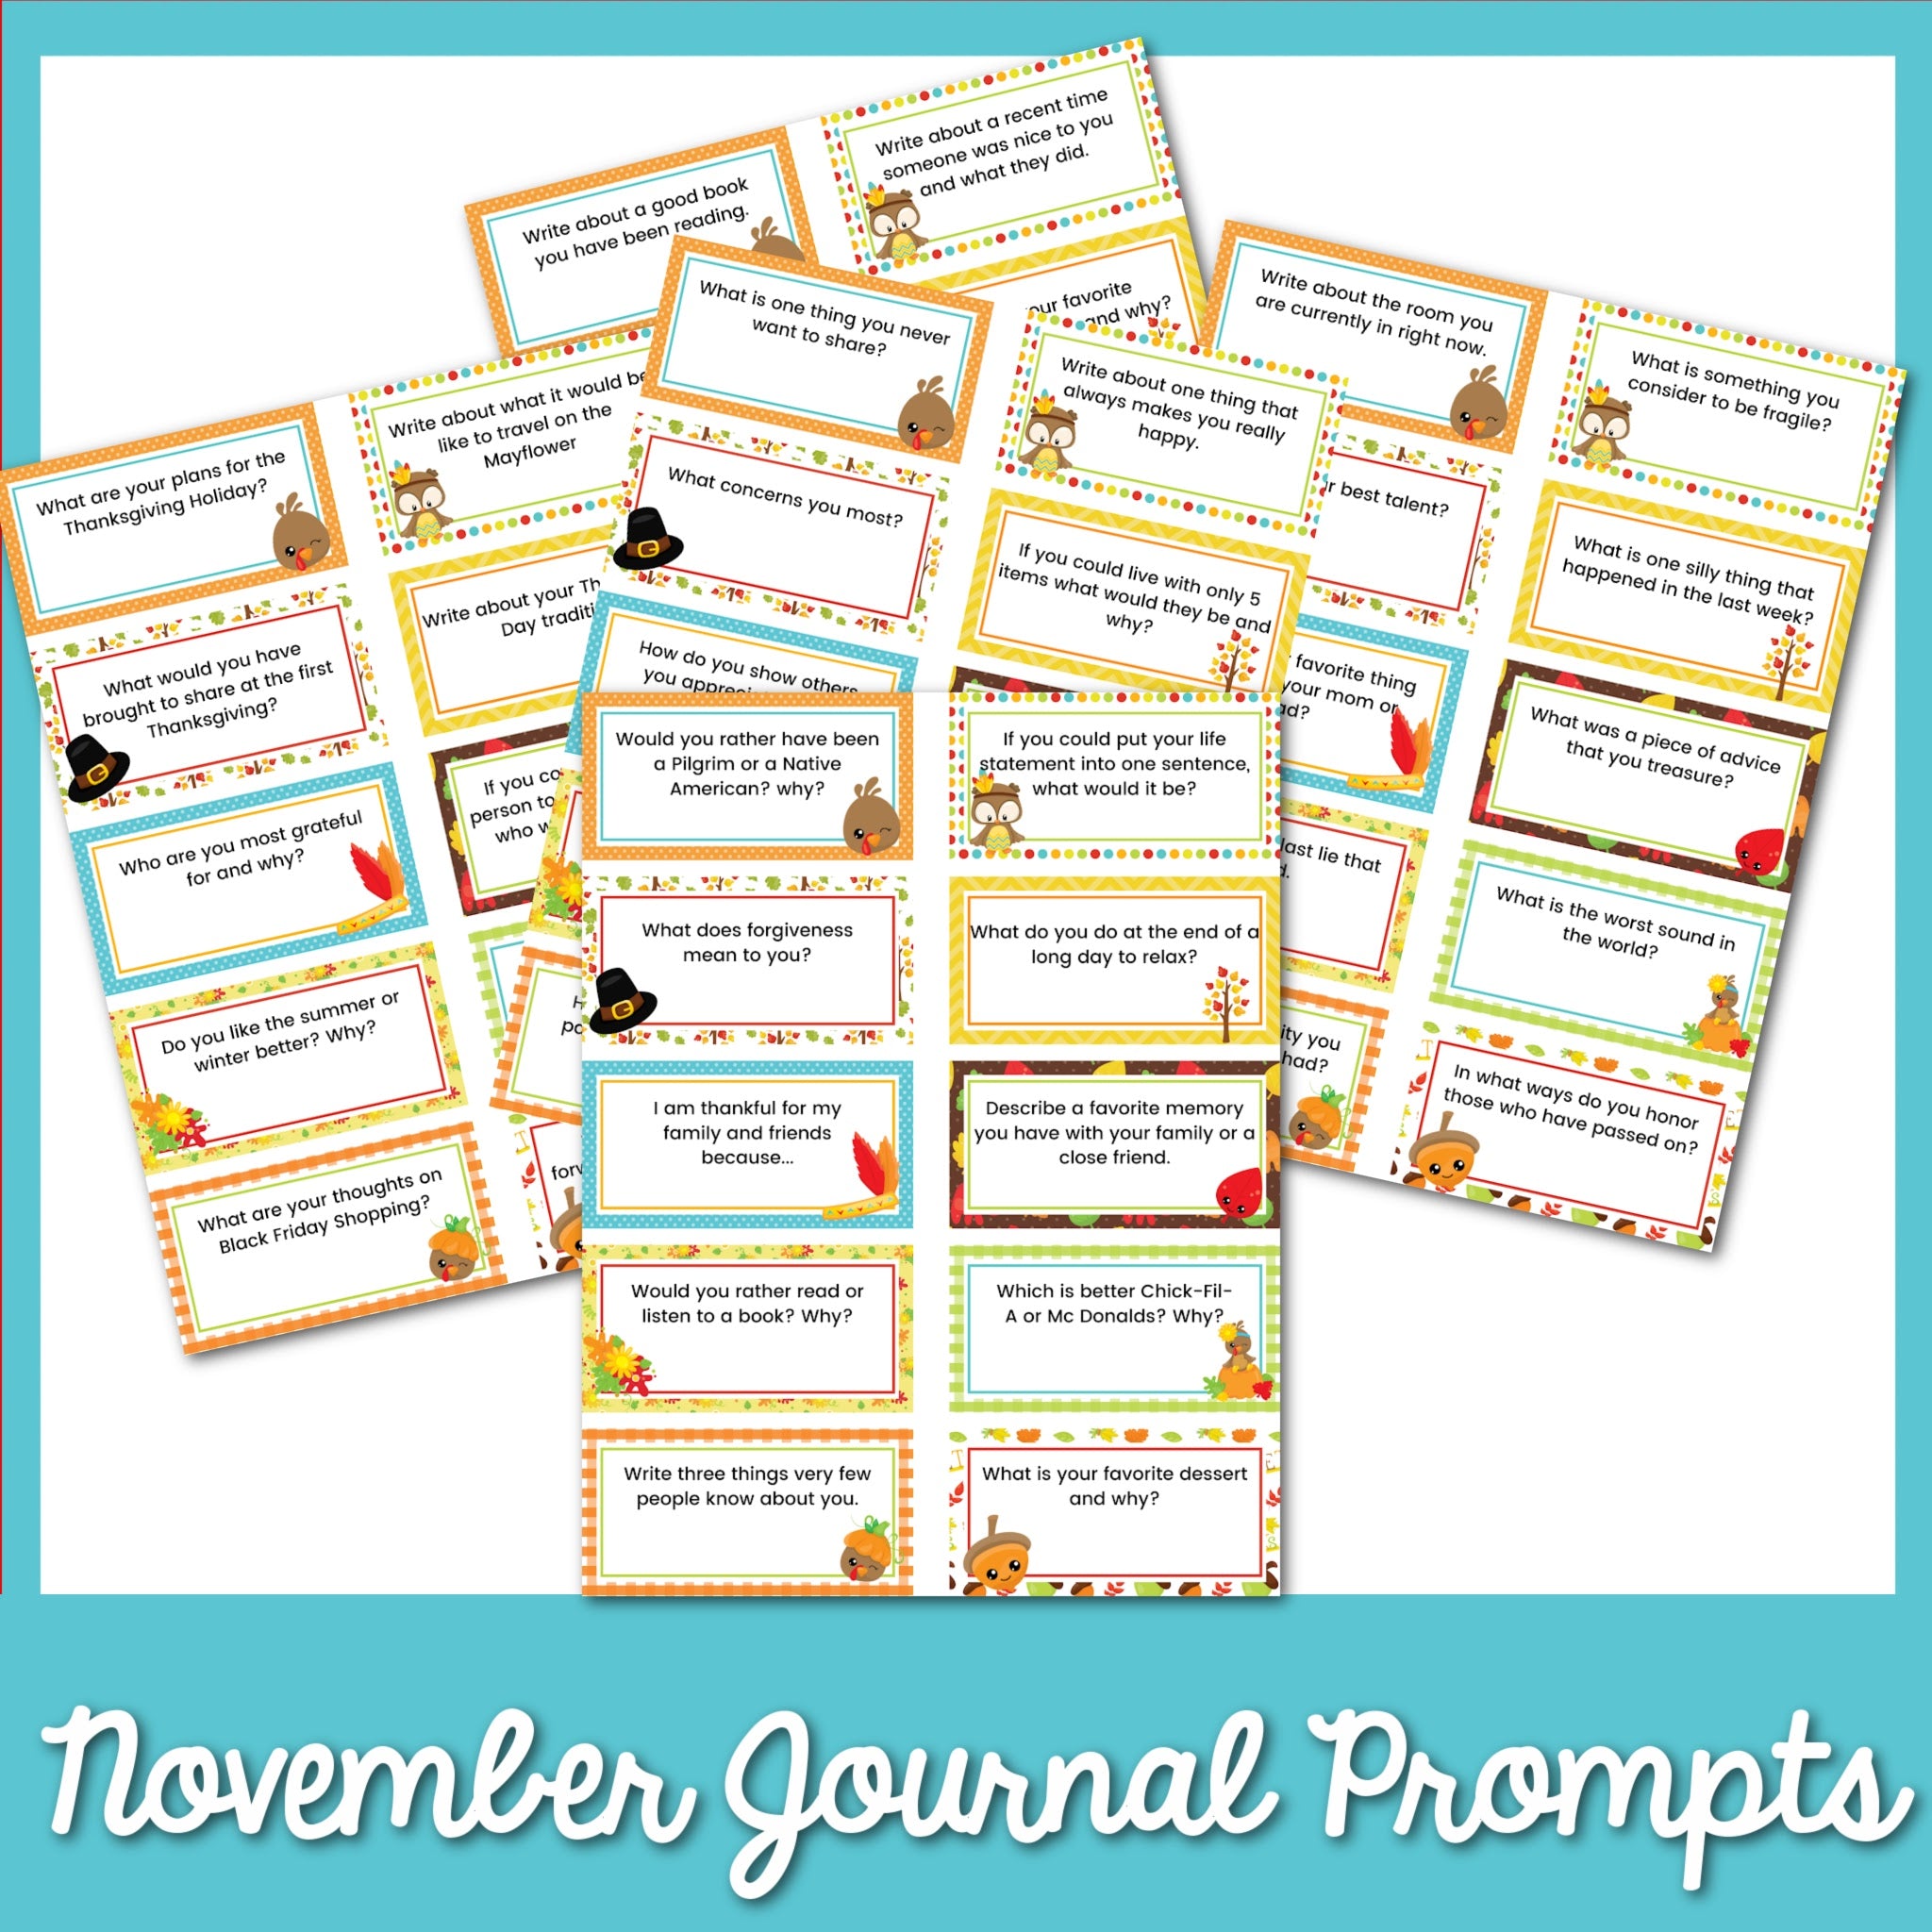 50 November Journal Prompts